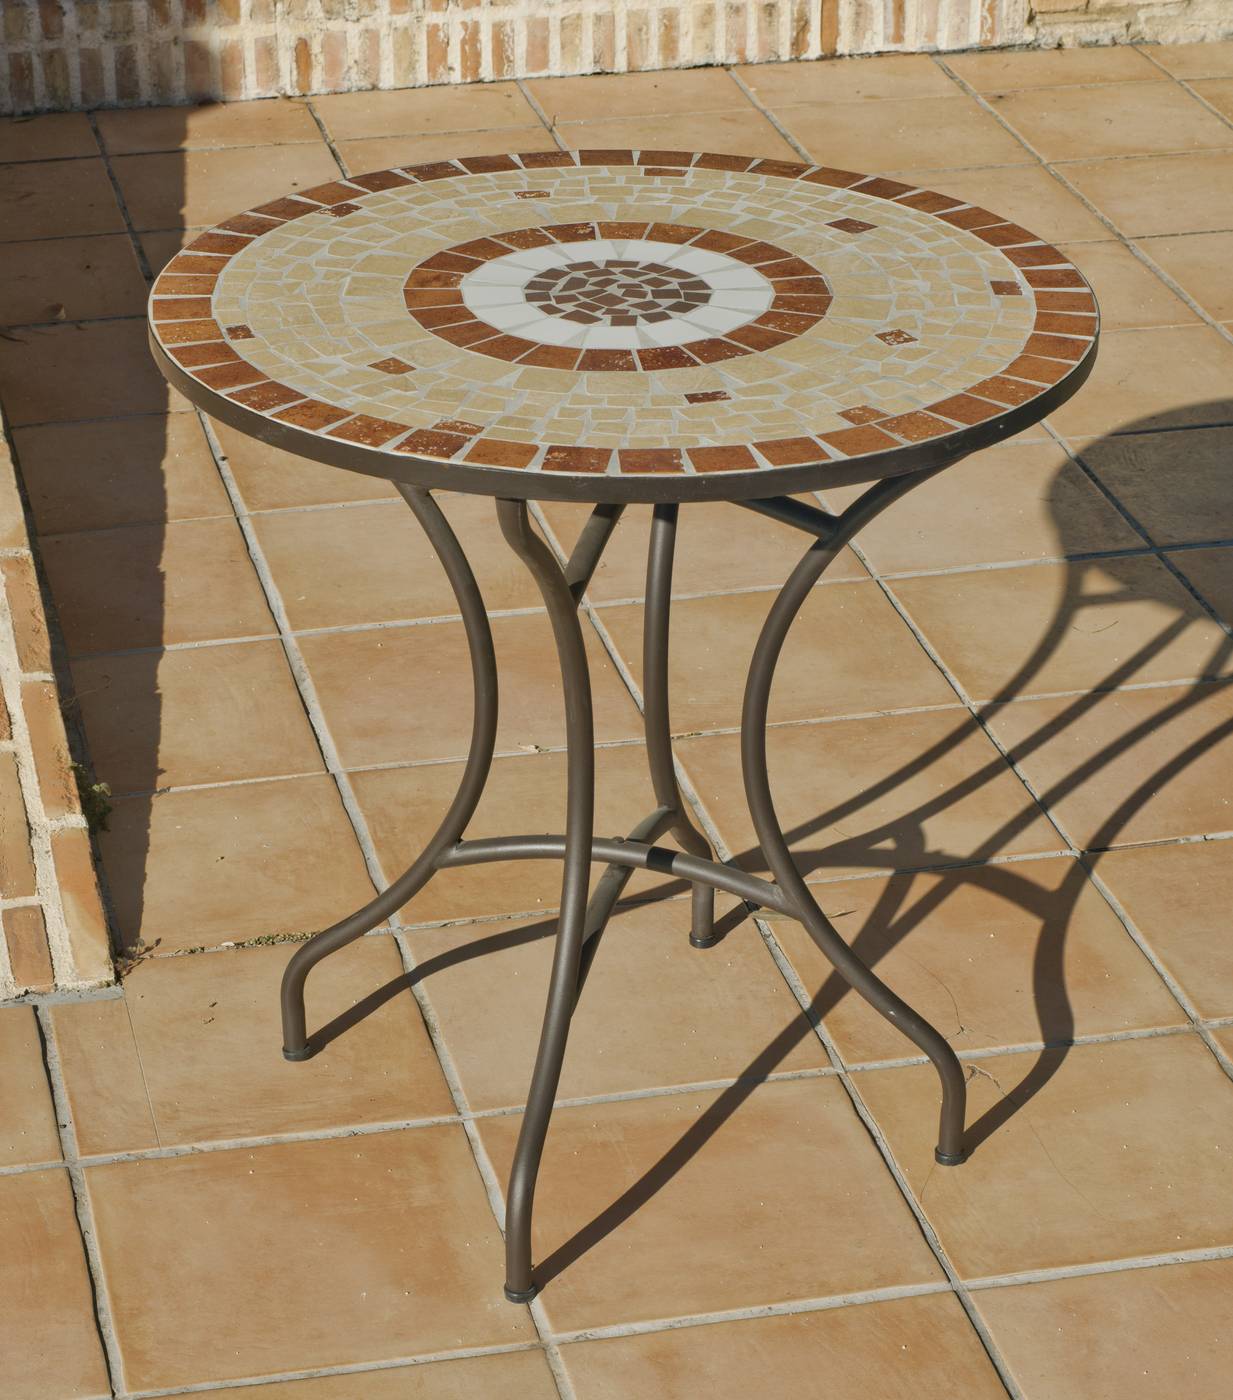 Set Mosaico Claire-Flandes 75-2 - Conjunto mosaico para jardín o terraza: 1 mesa mosaico redonda + 2 sillones de ratán sintético + 2 cojines